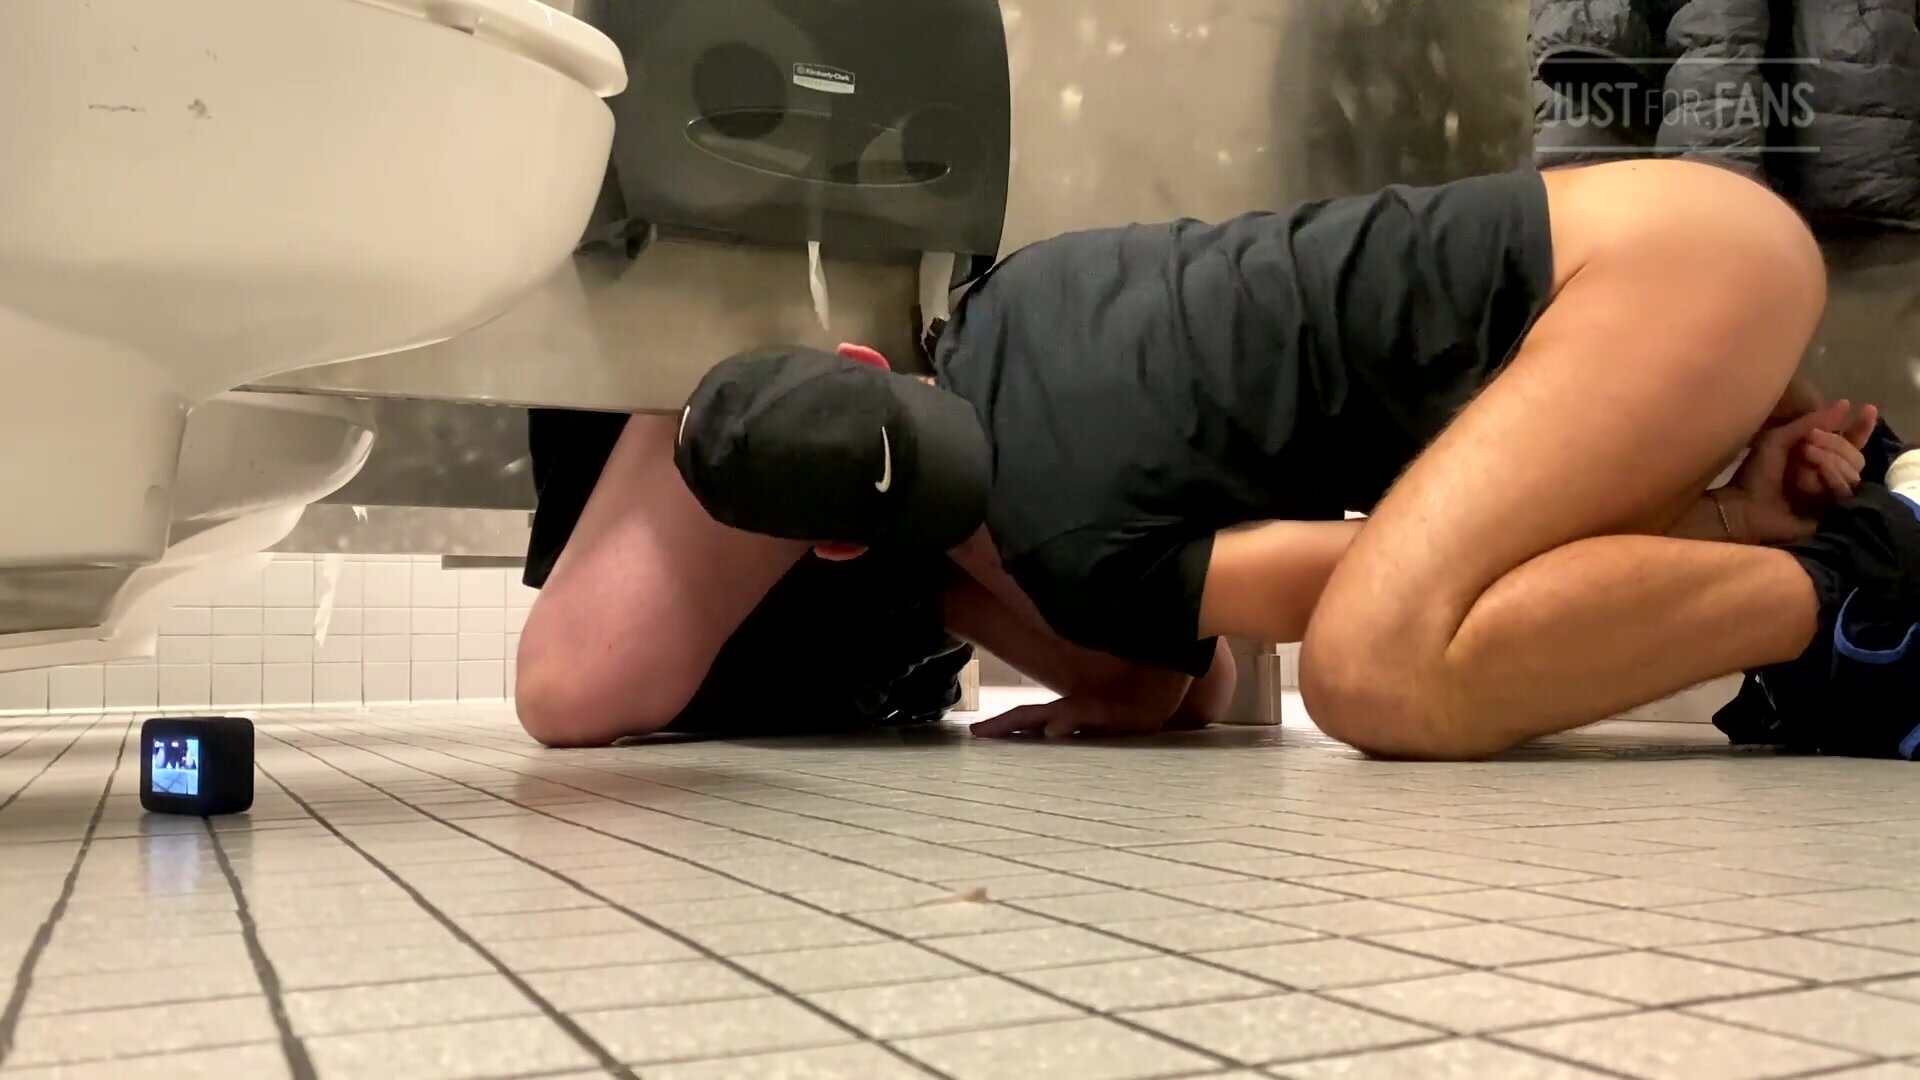 Public bathroom cruising strangers